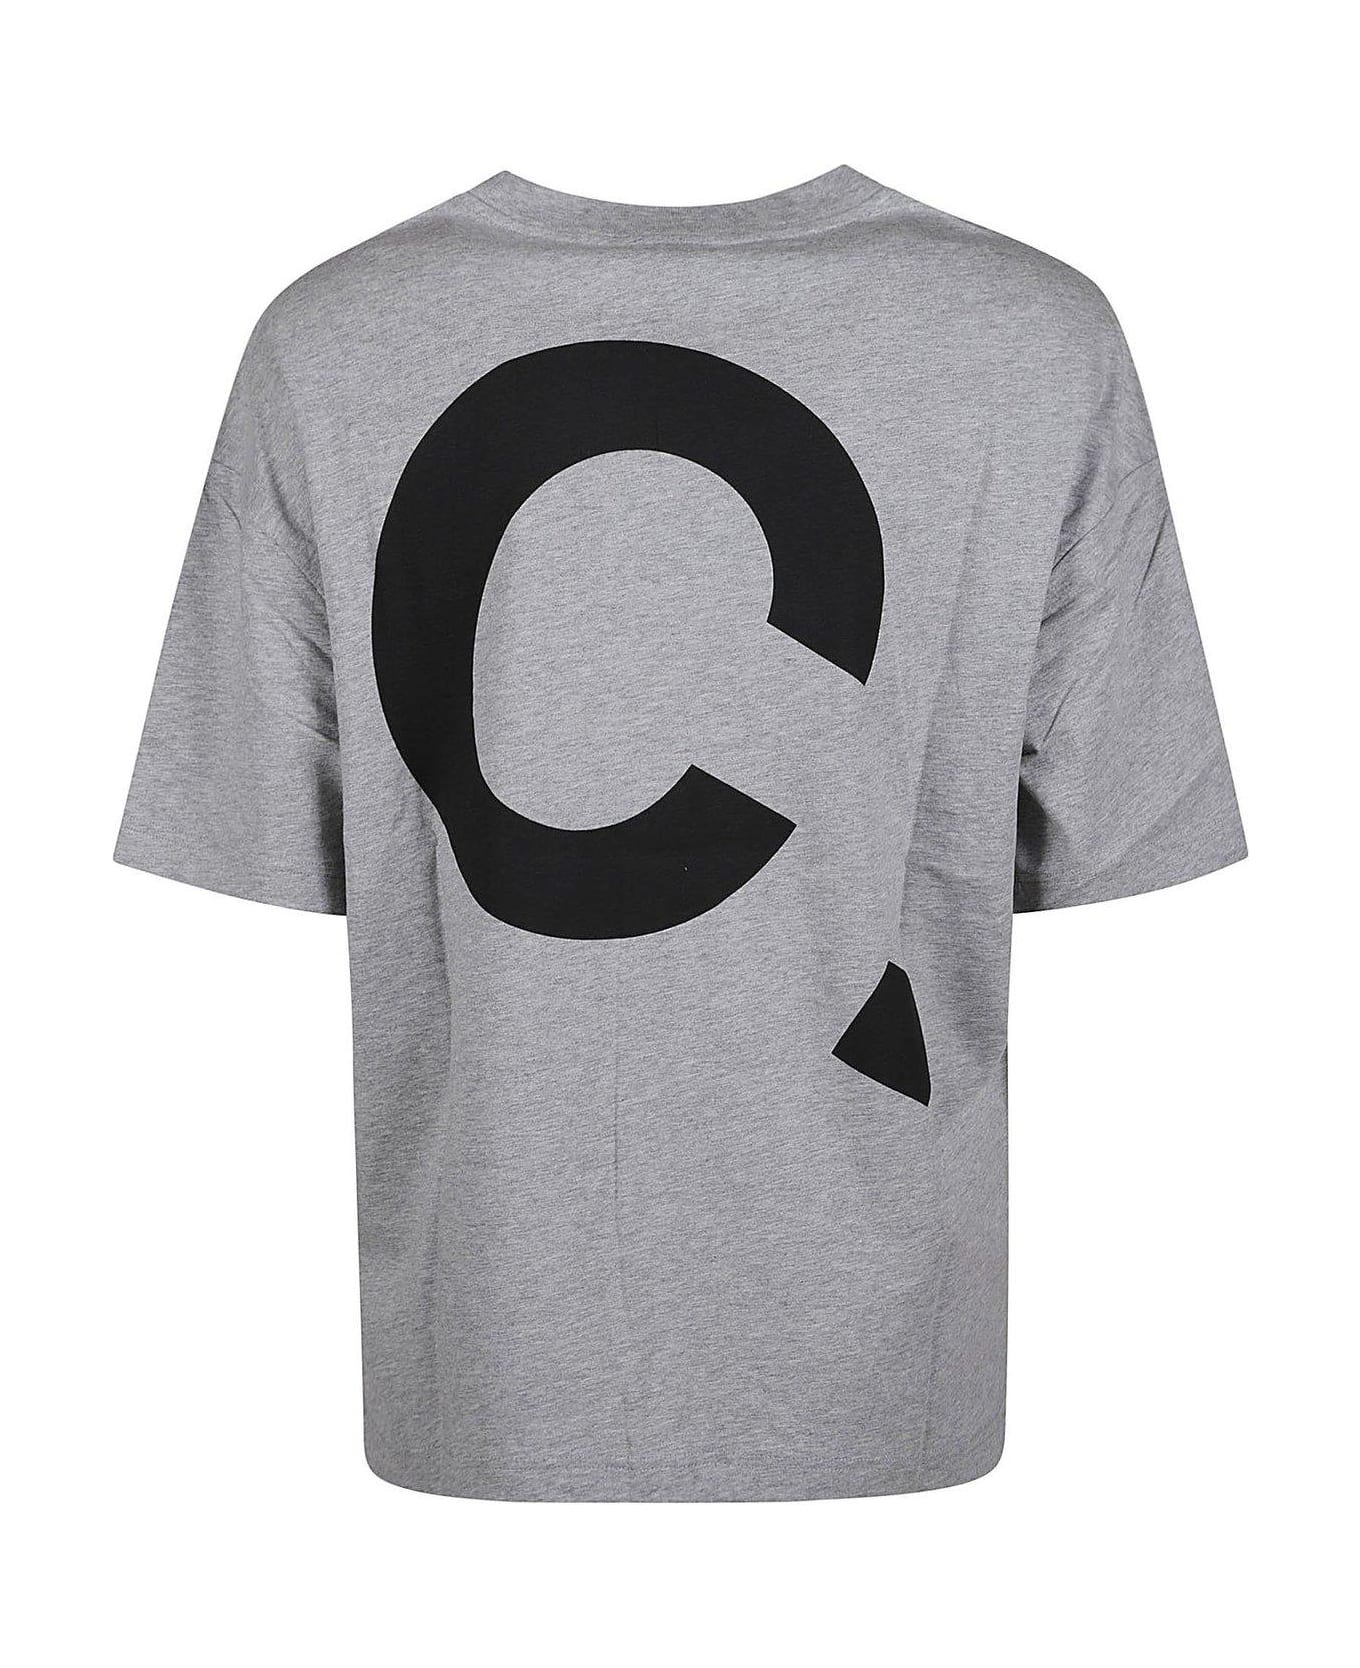 A.P.C. Lisandre Crewneck T-shirt - gris chine